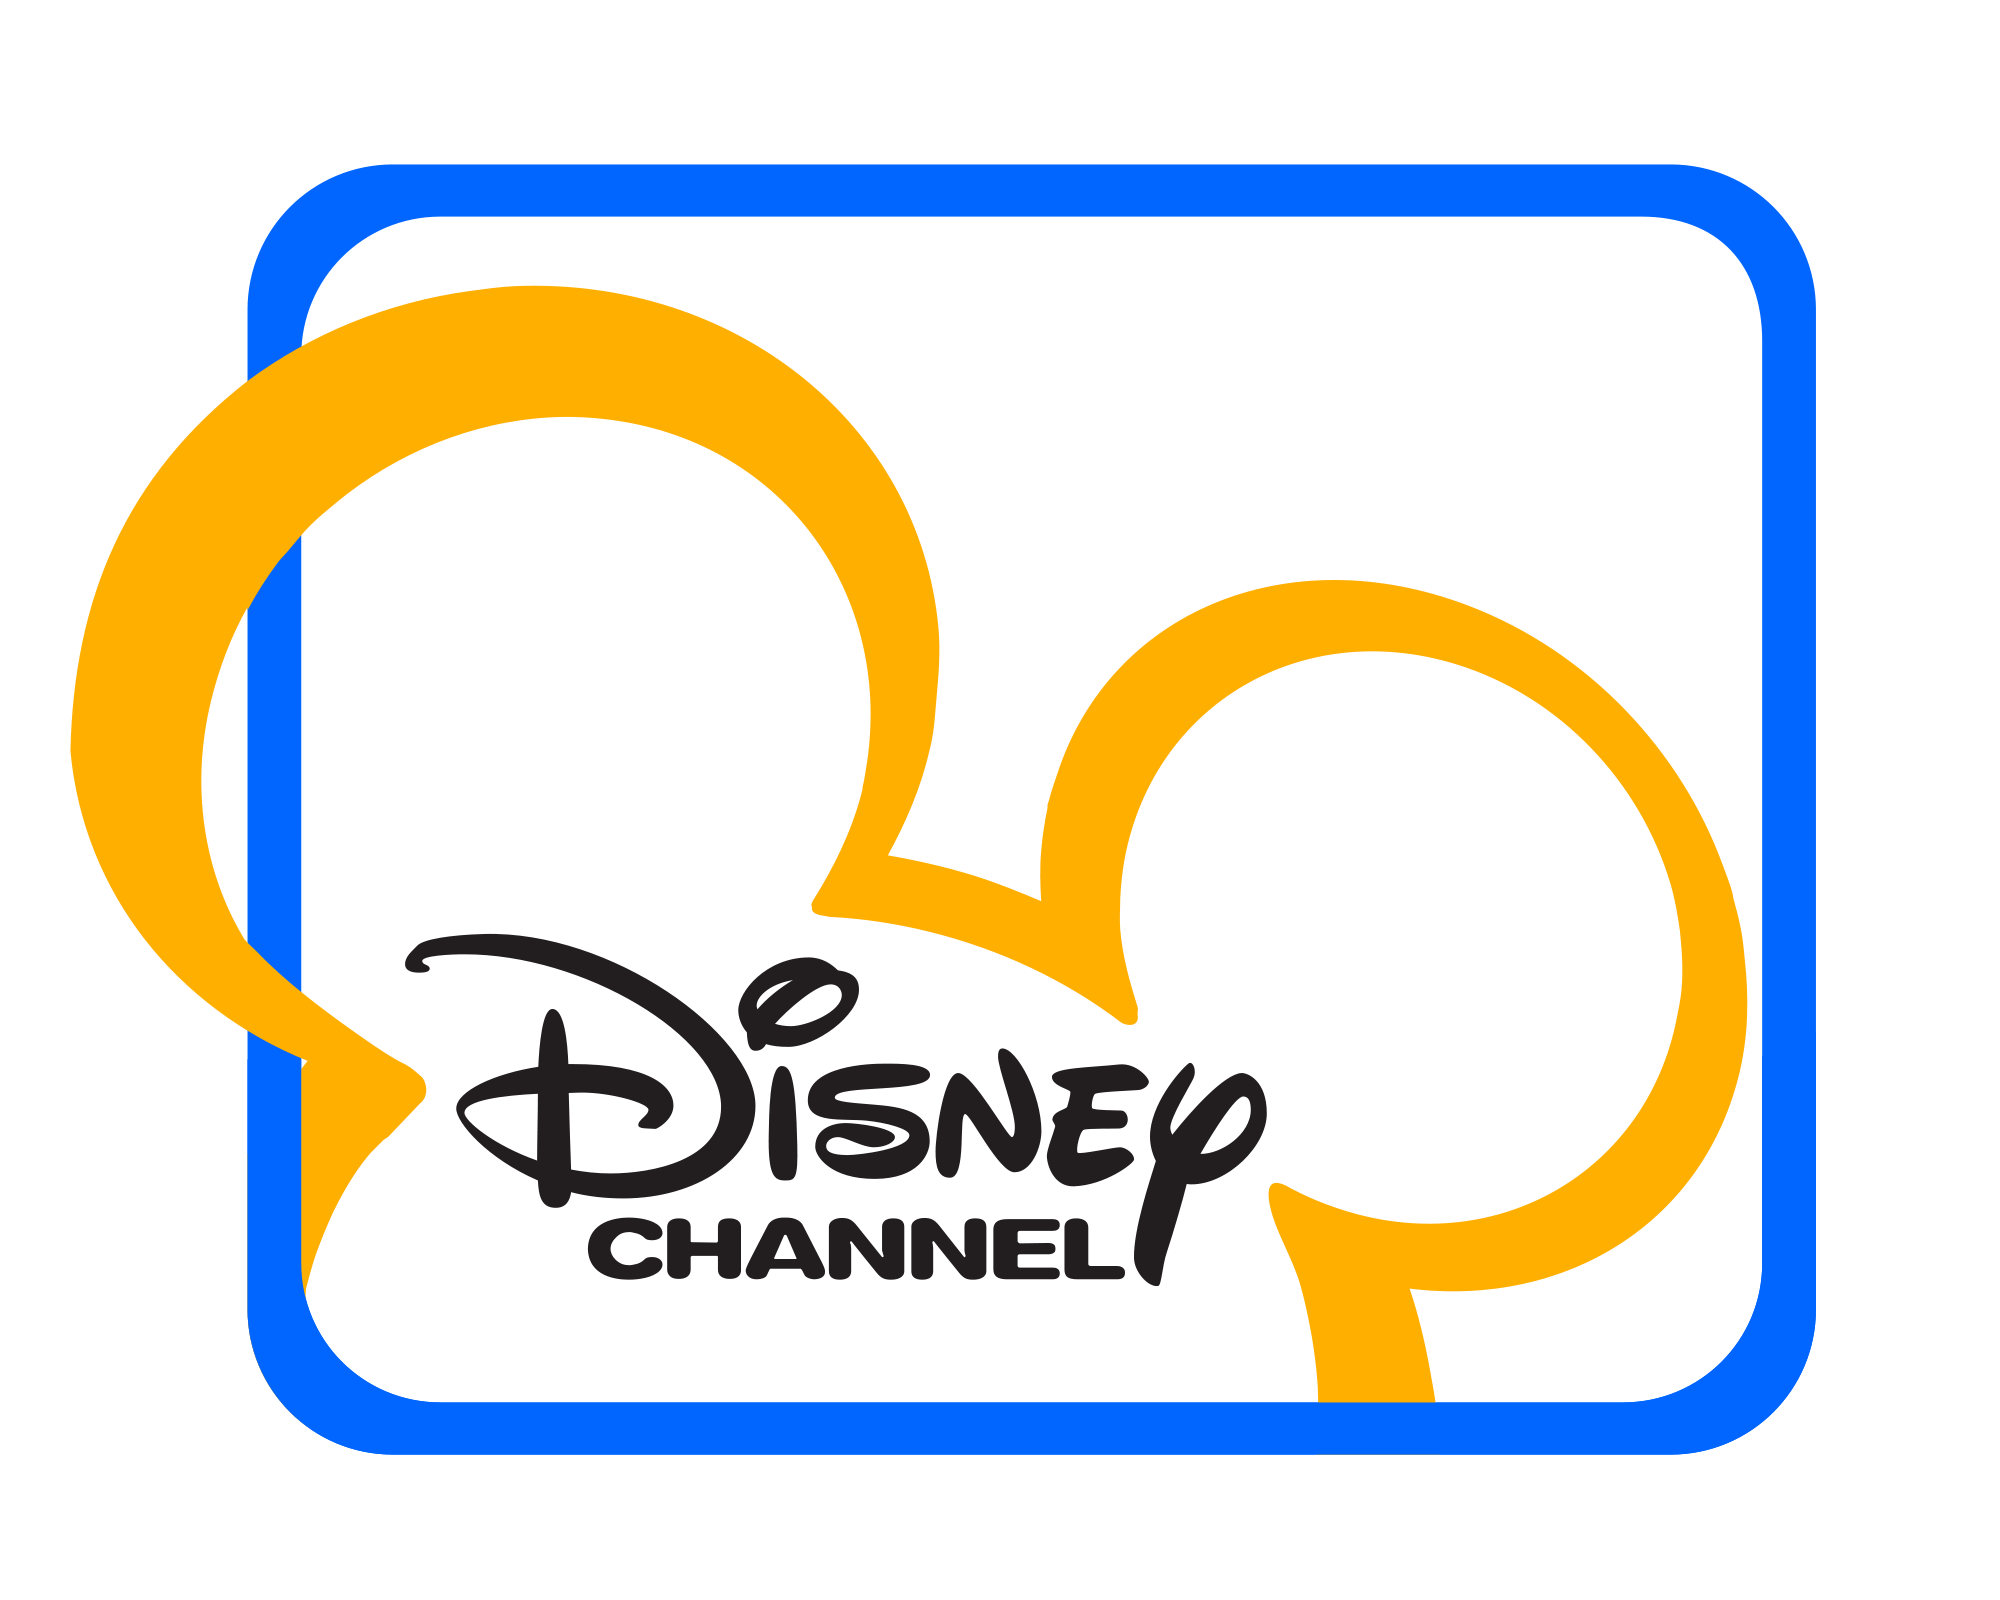 Дисней русский канал. Канал Disney. Телеканал Дисней. Логотип Disney channel. Канал Disney (Россия).